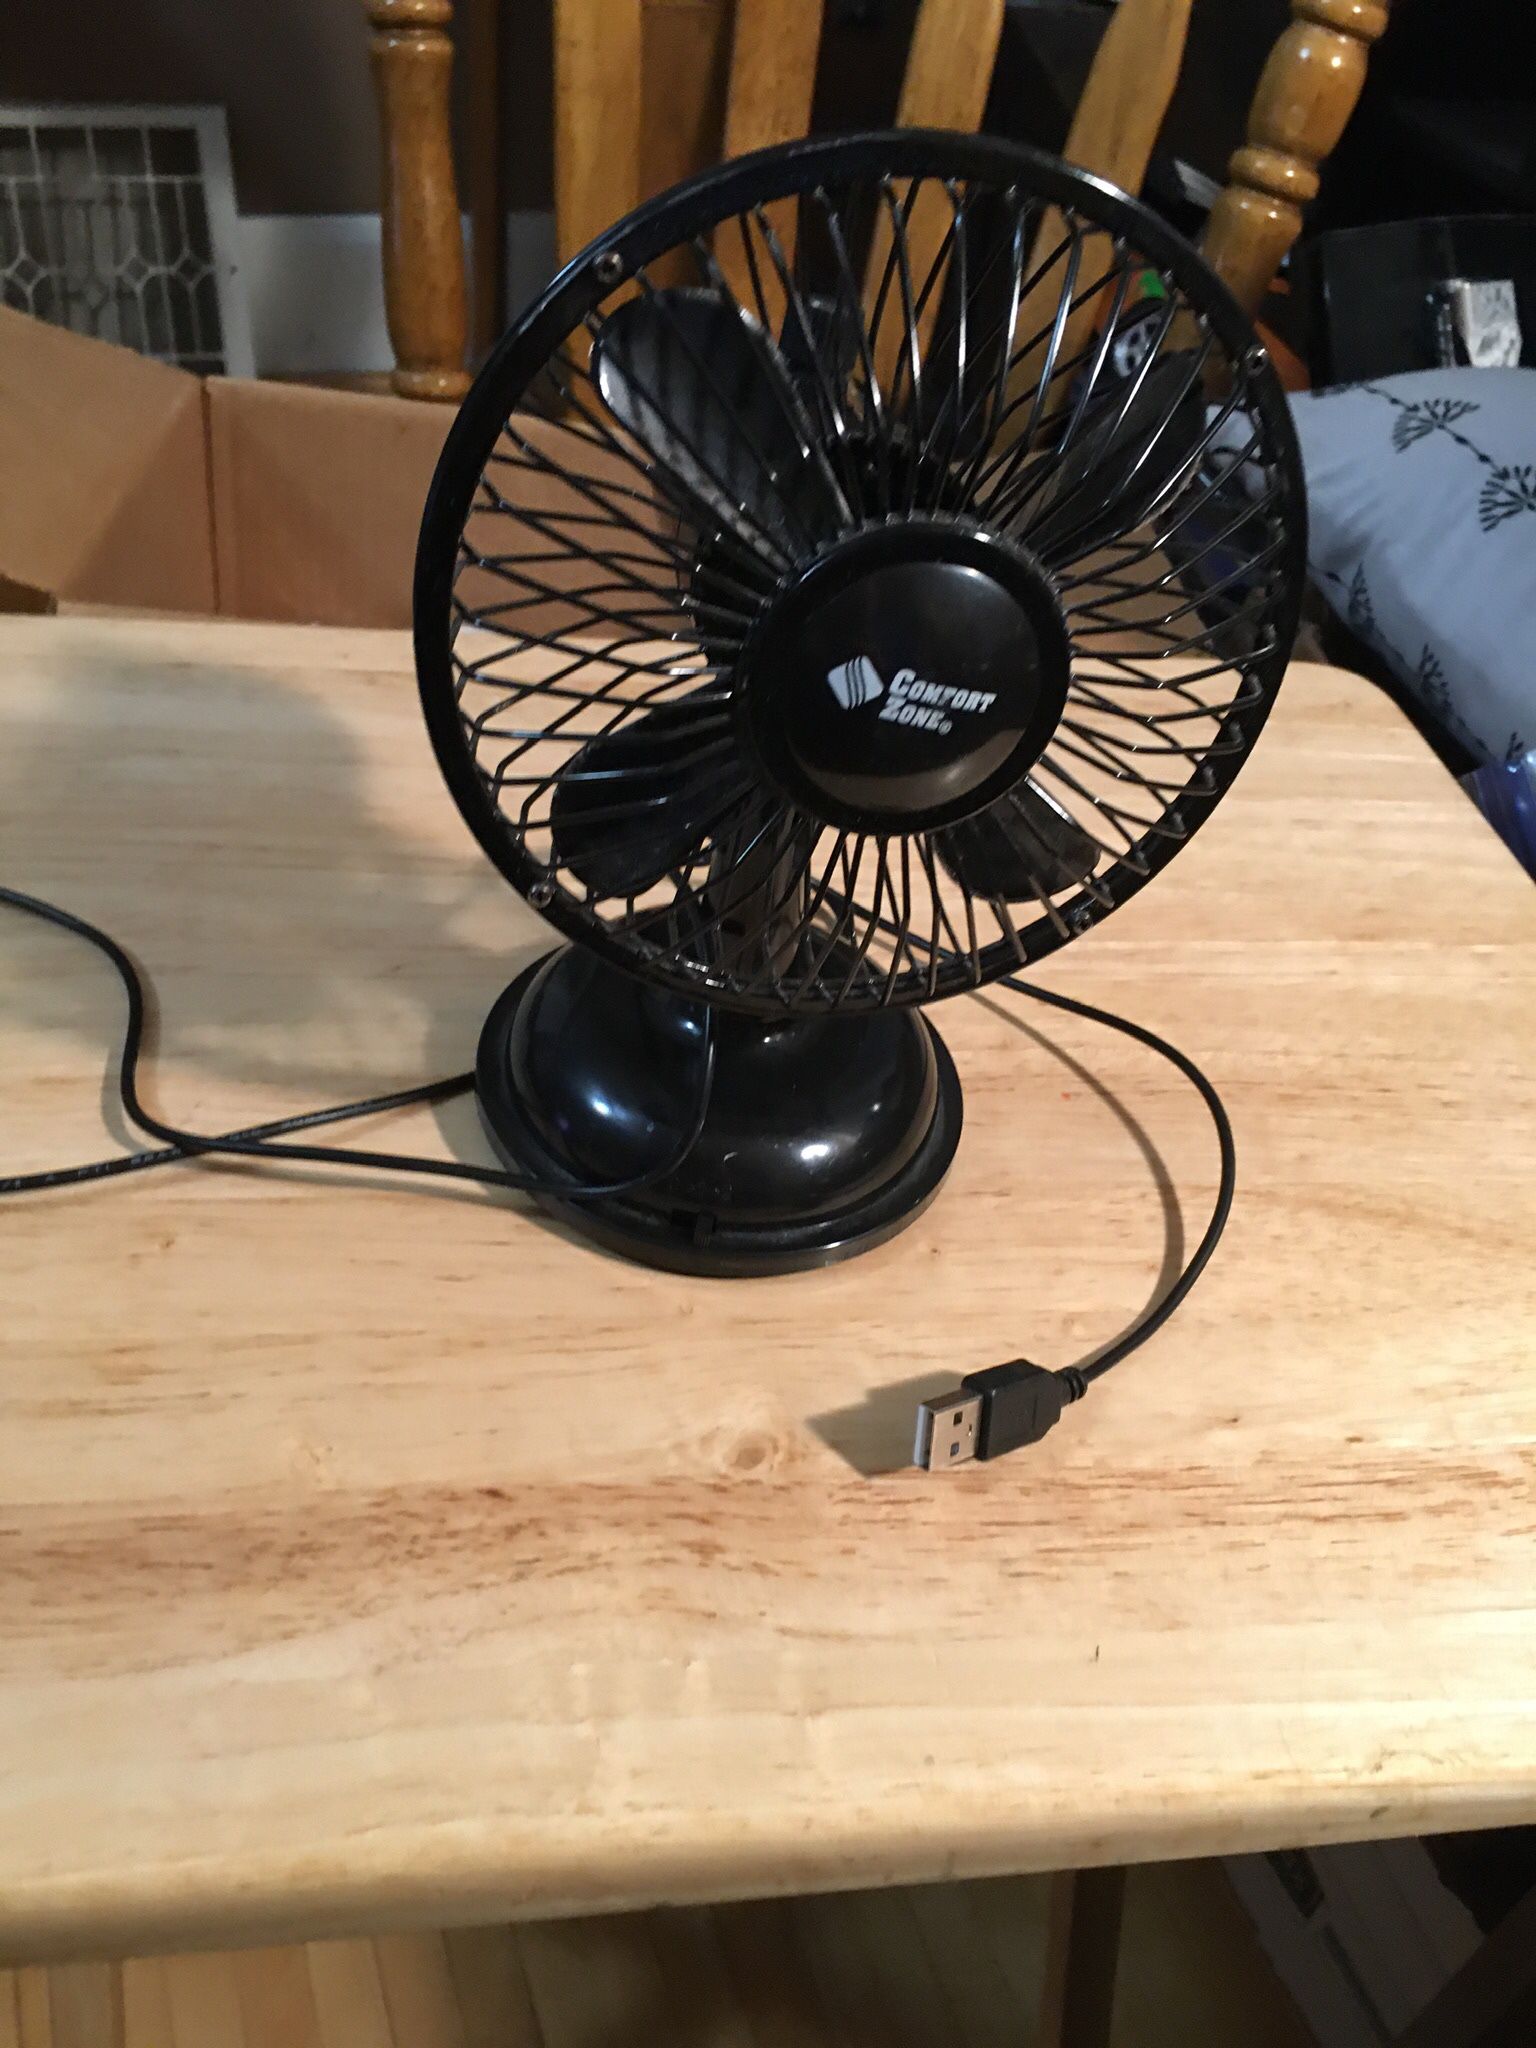 smaller usb fan